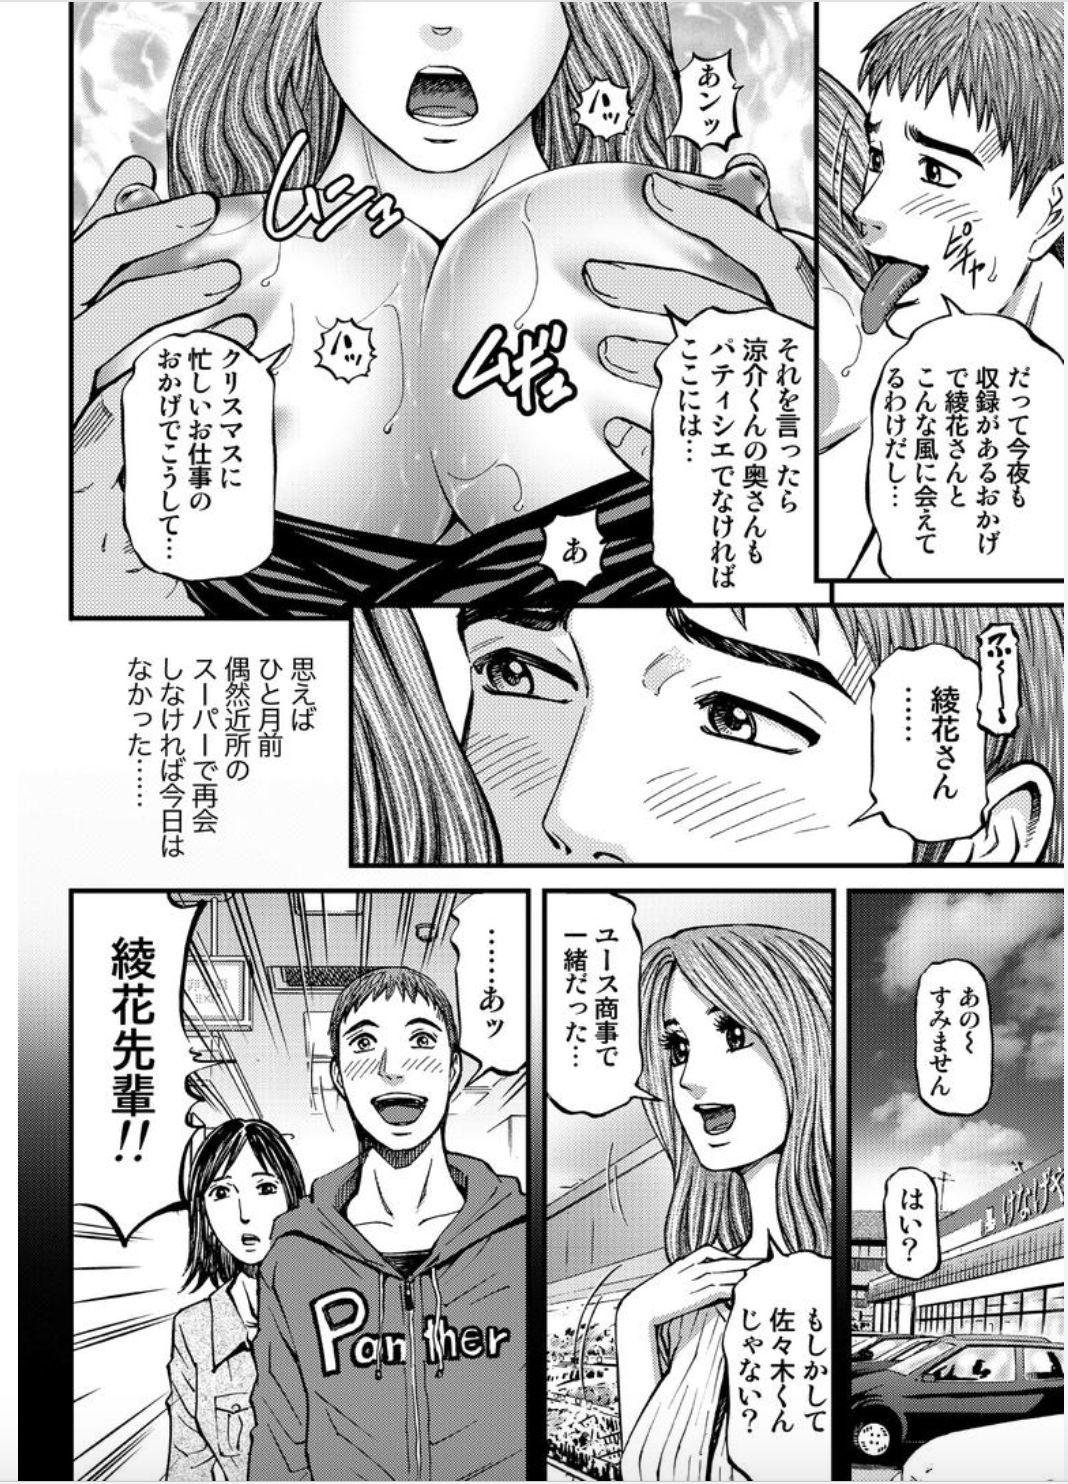 Tites Onna-tachi ga Iku Toki... Ero Drama Vol. 4 Seiya Perfect Tits - Page 6